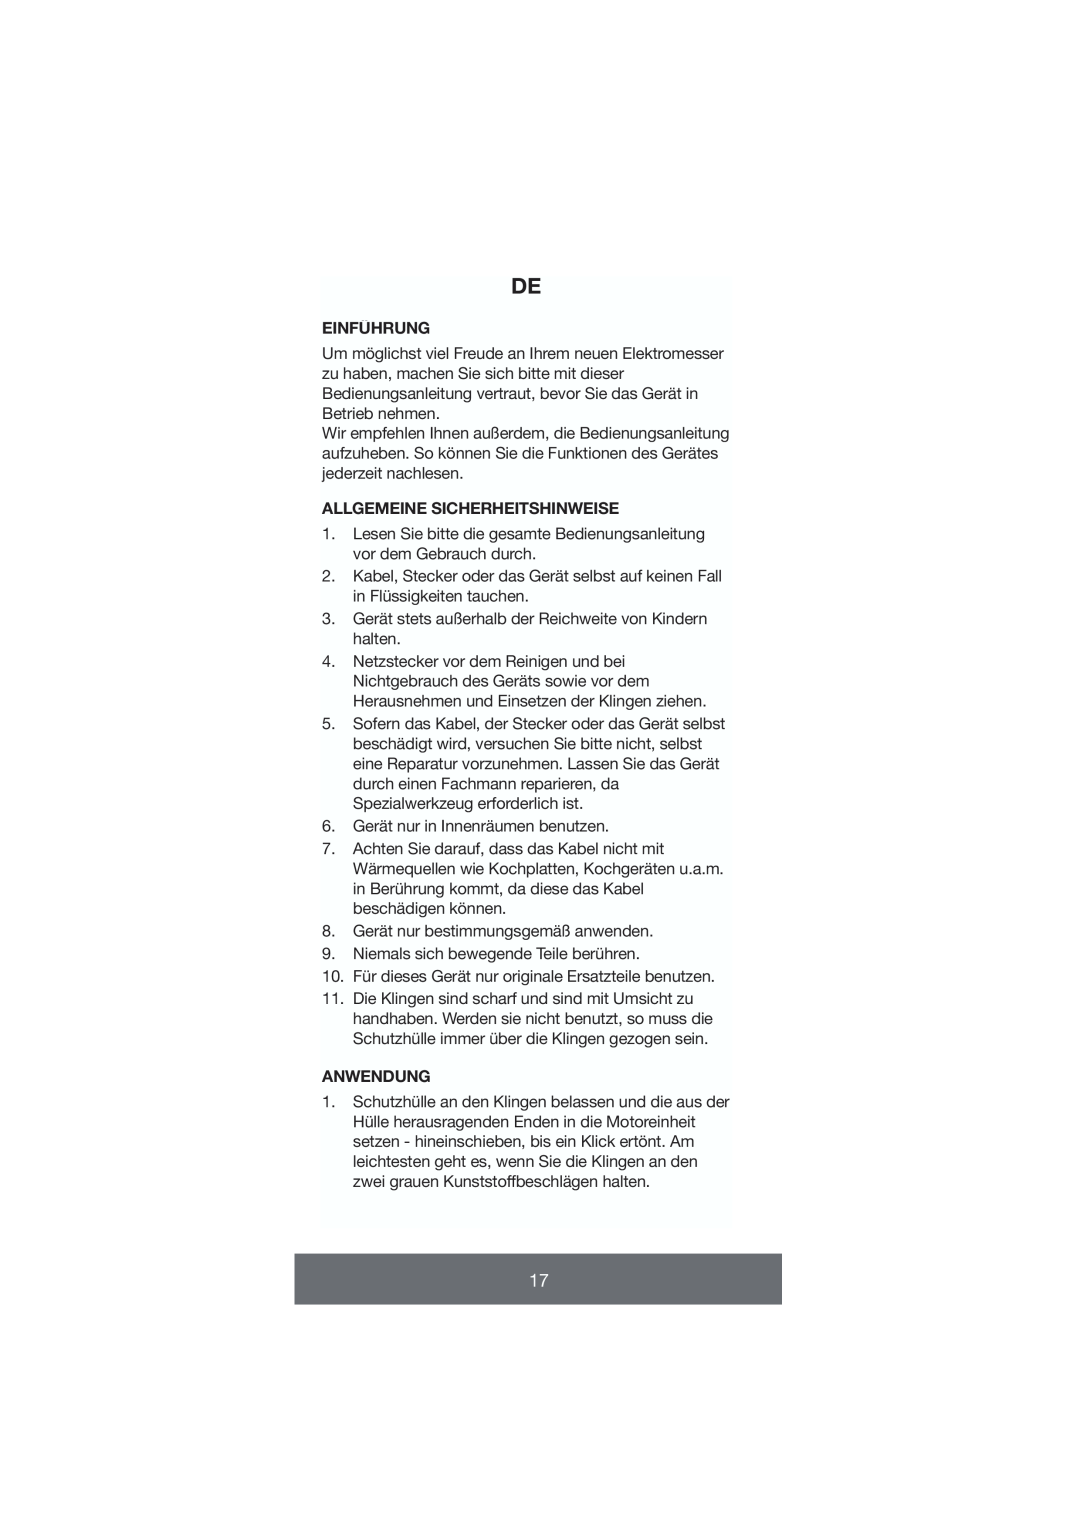 Melissa 646-035 manual Einführung, Allgemeine Sicherheitshinweise, Anwendung 